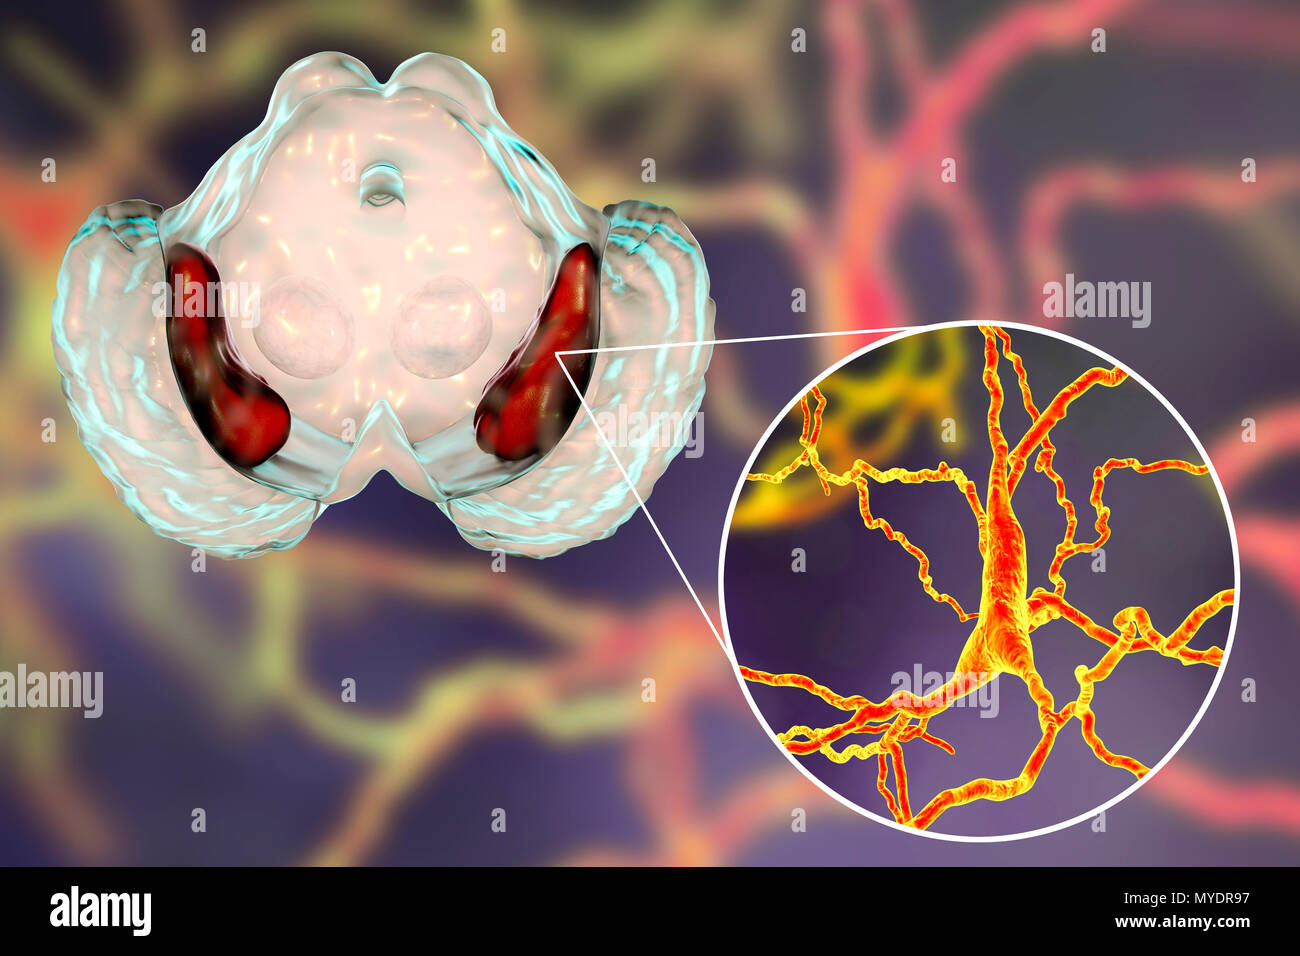 Substantia nigra. Computer zeigt eine gesunde substantia Nigra aus einem menschlichen Gehirn und eine Nahaufnahme von dopaminergen Neuronen in der Substantia nigra gefunden. Die substantia nigra spielt eine wichtige Rolle bei der Belohnung, Sucht, und Bewegung. Degeneration dieser Struktur ist typisch für die Parkinson-krankheit. Stockfoto